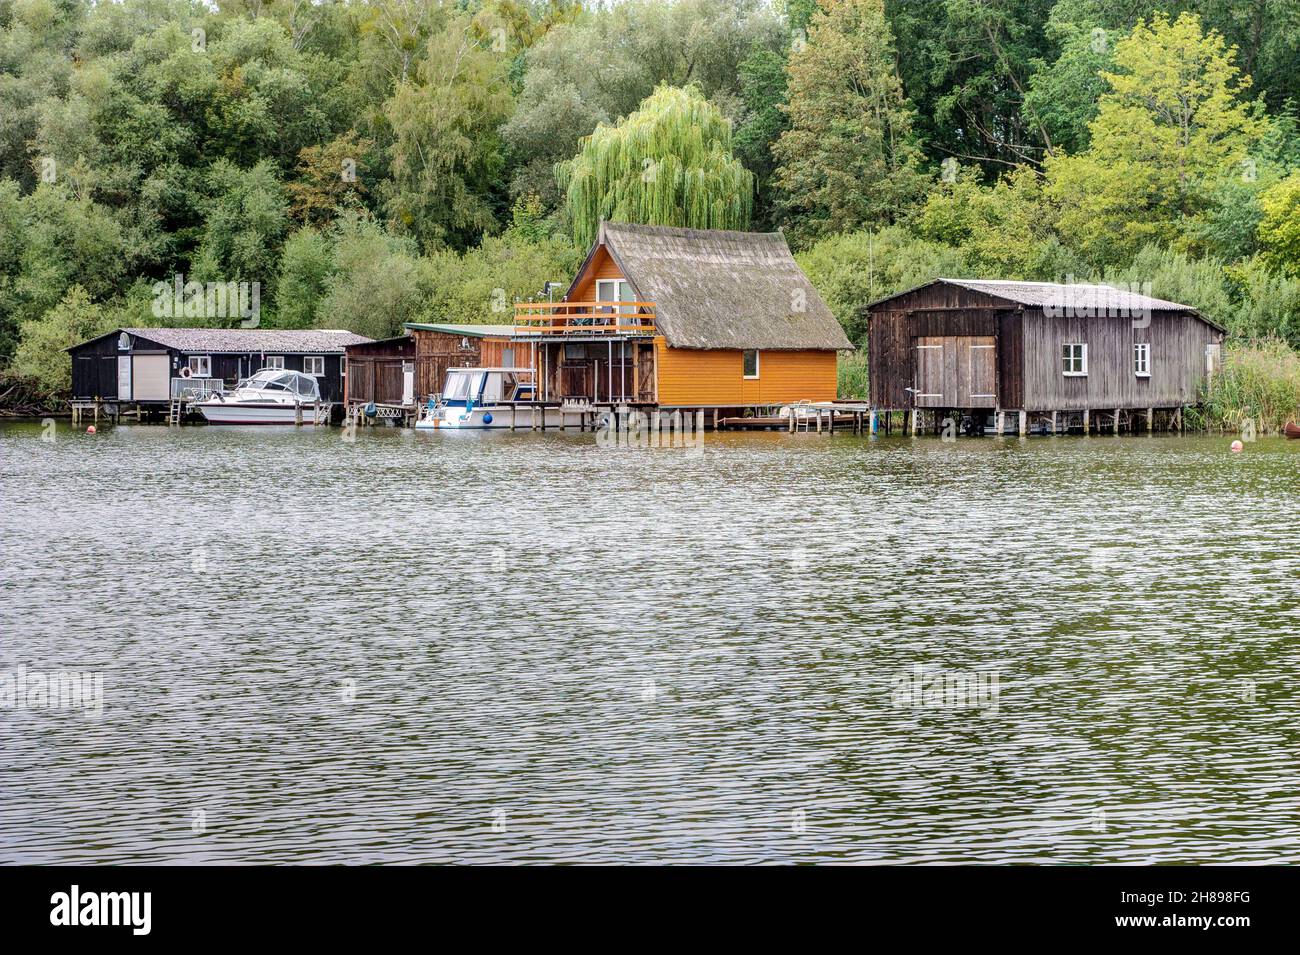 Case di barche tipiche come si trovano ovunque sul Mecklenburg Lake District lontano dalle città frenetiche. Foto Stock